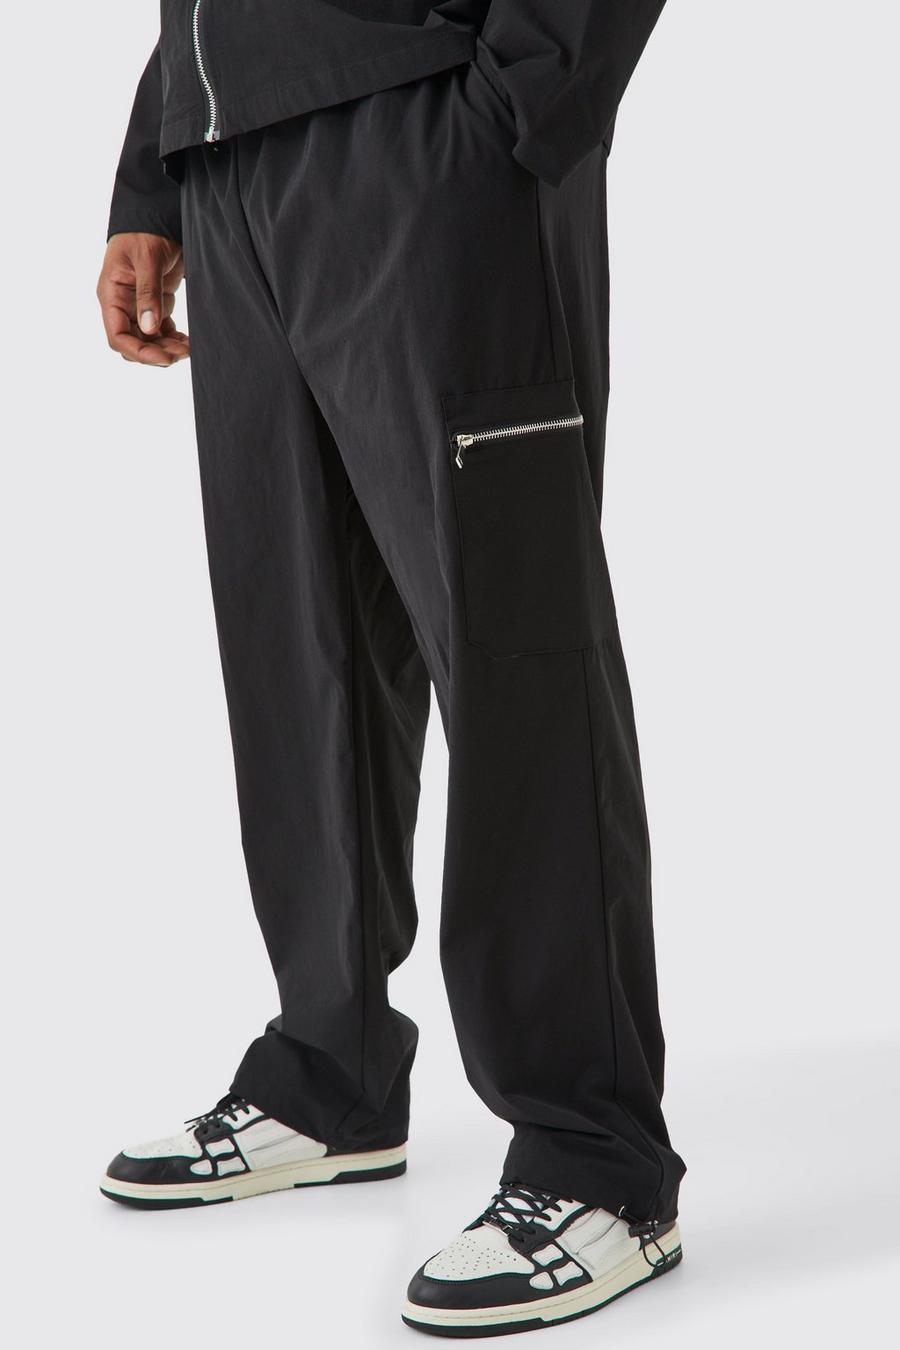 Pantalón Plus cargo ajustado elástico con cintura elástica, Black nero